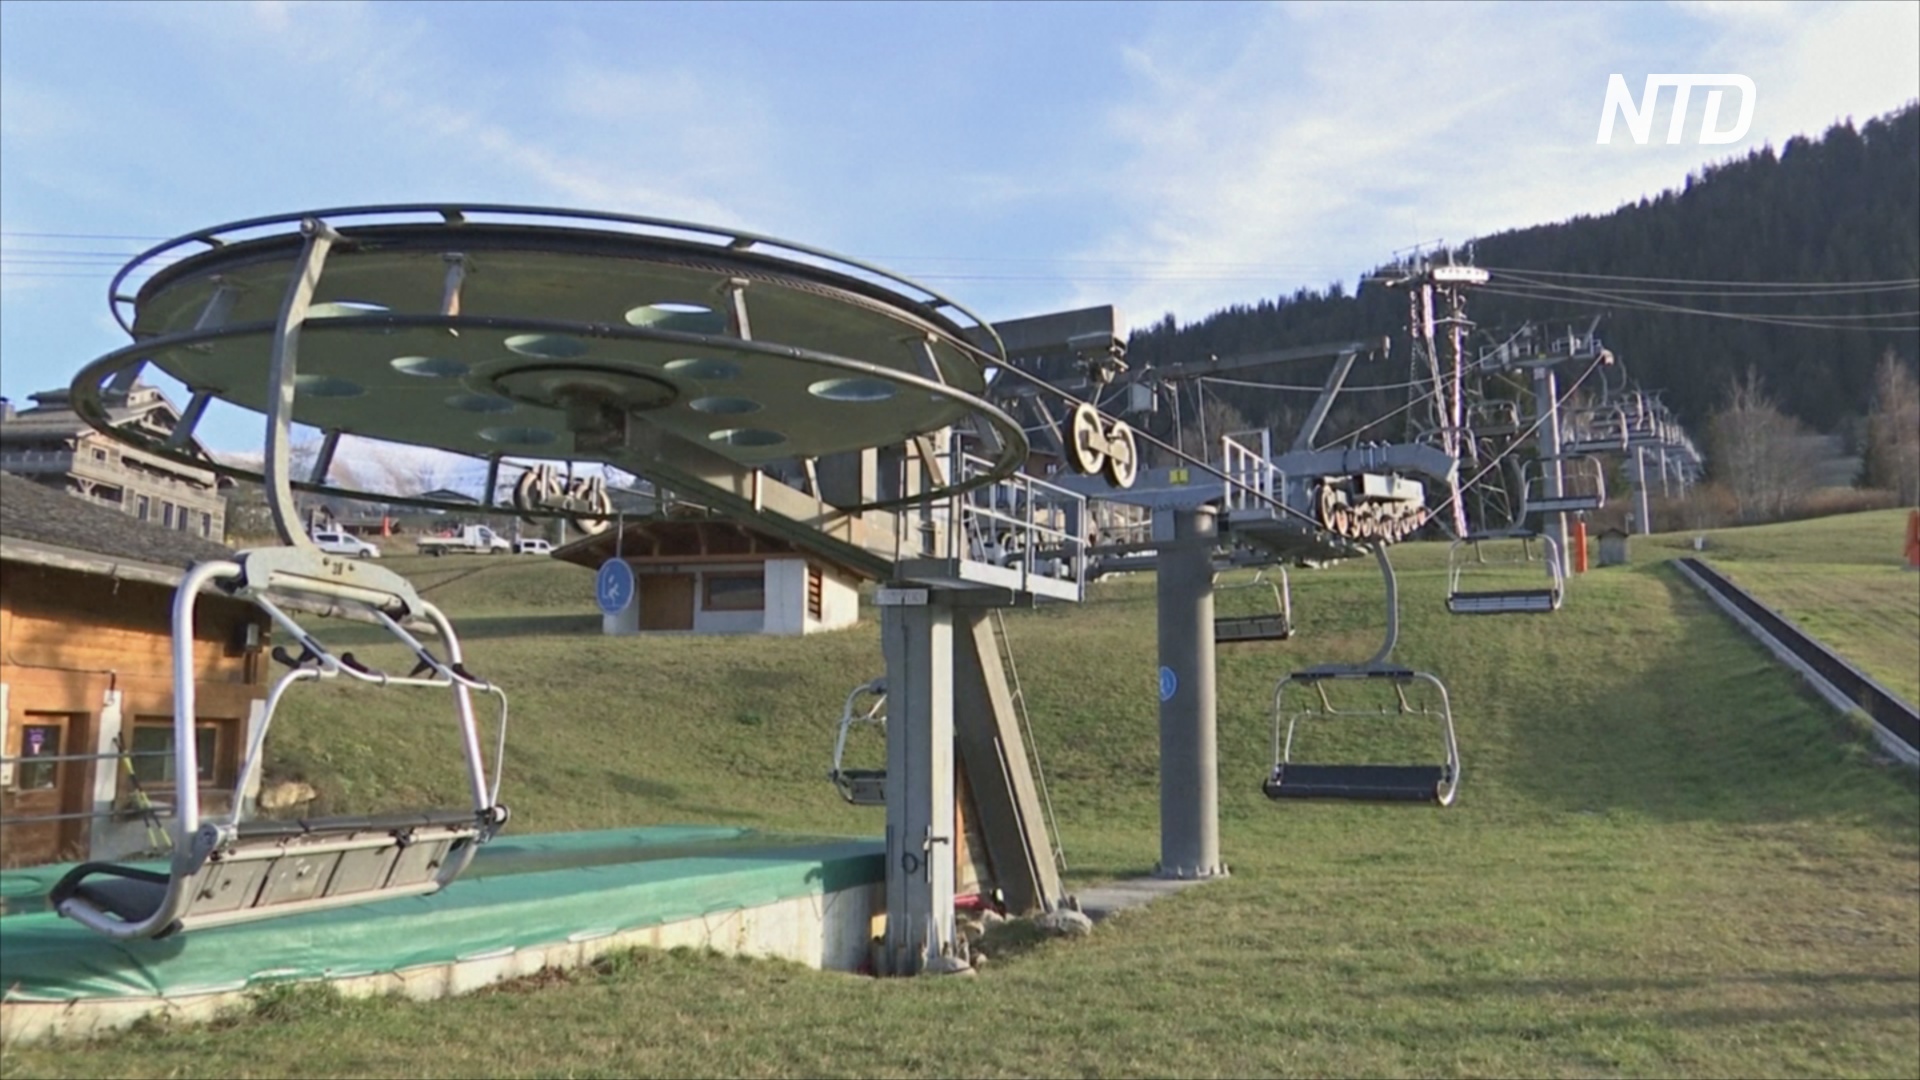 Открытие 20 января: горнолыжные курорты Франции ожидают провальной зимы